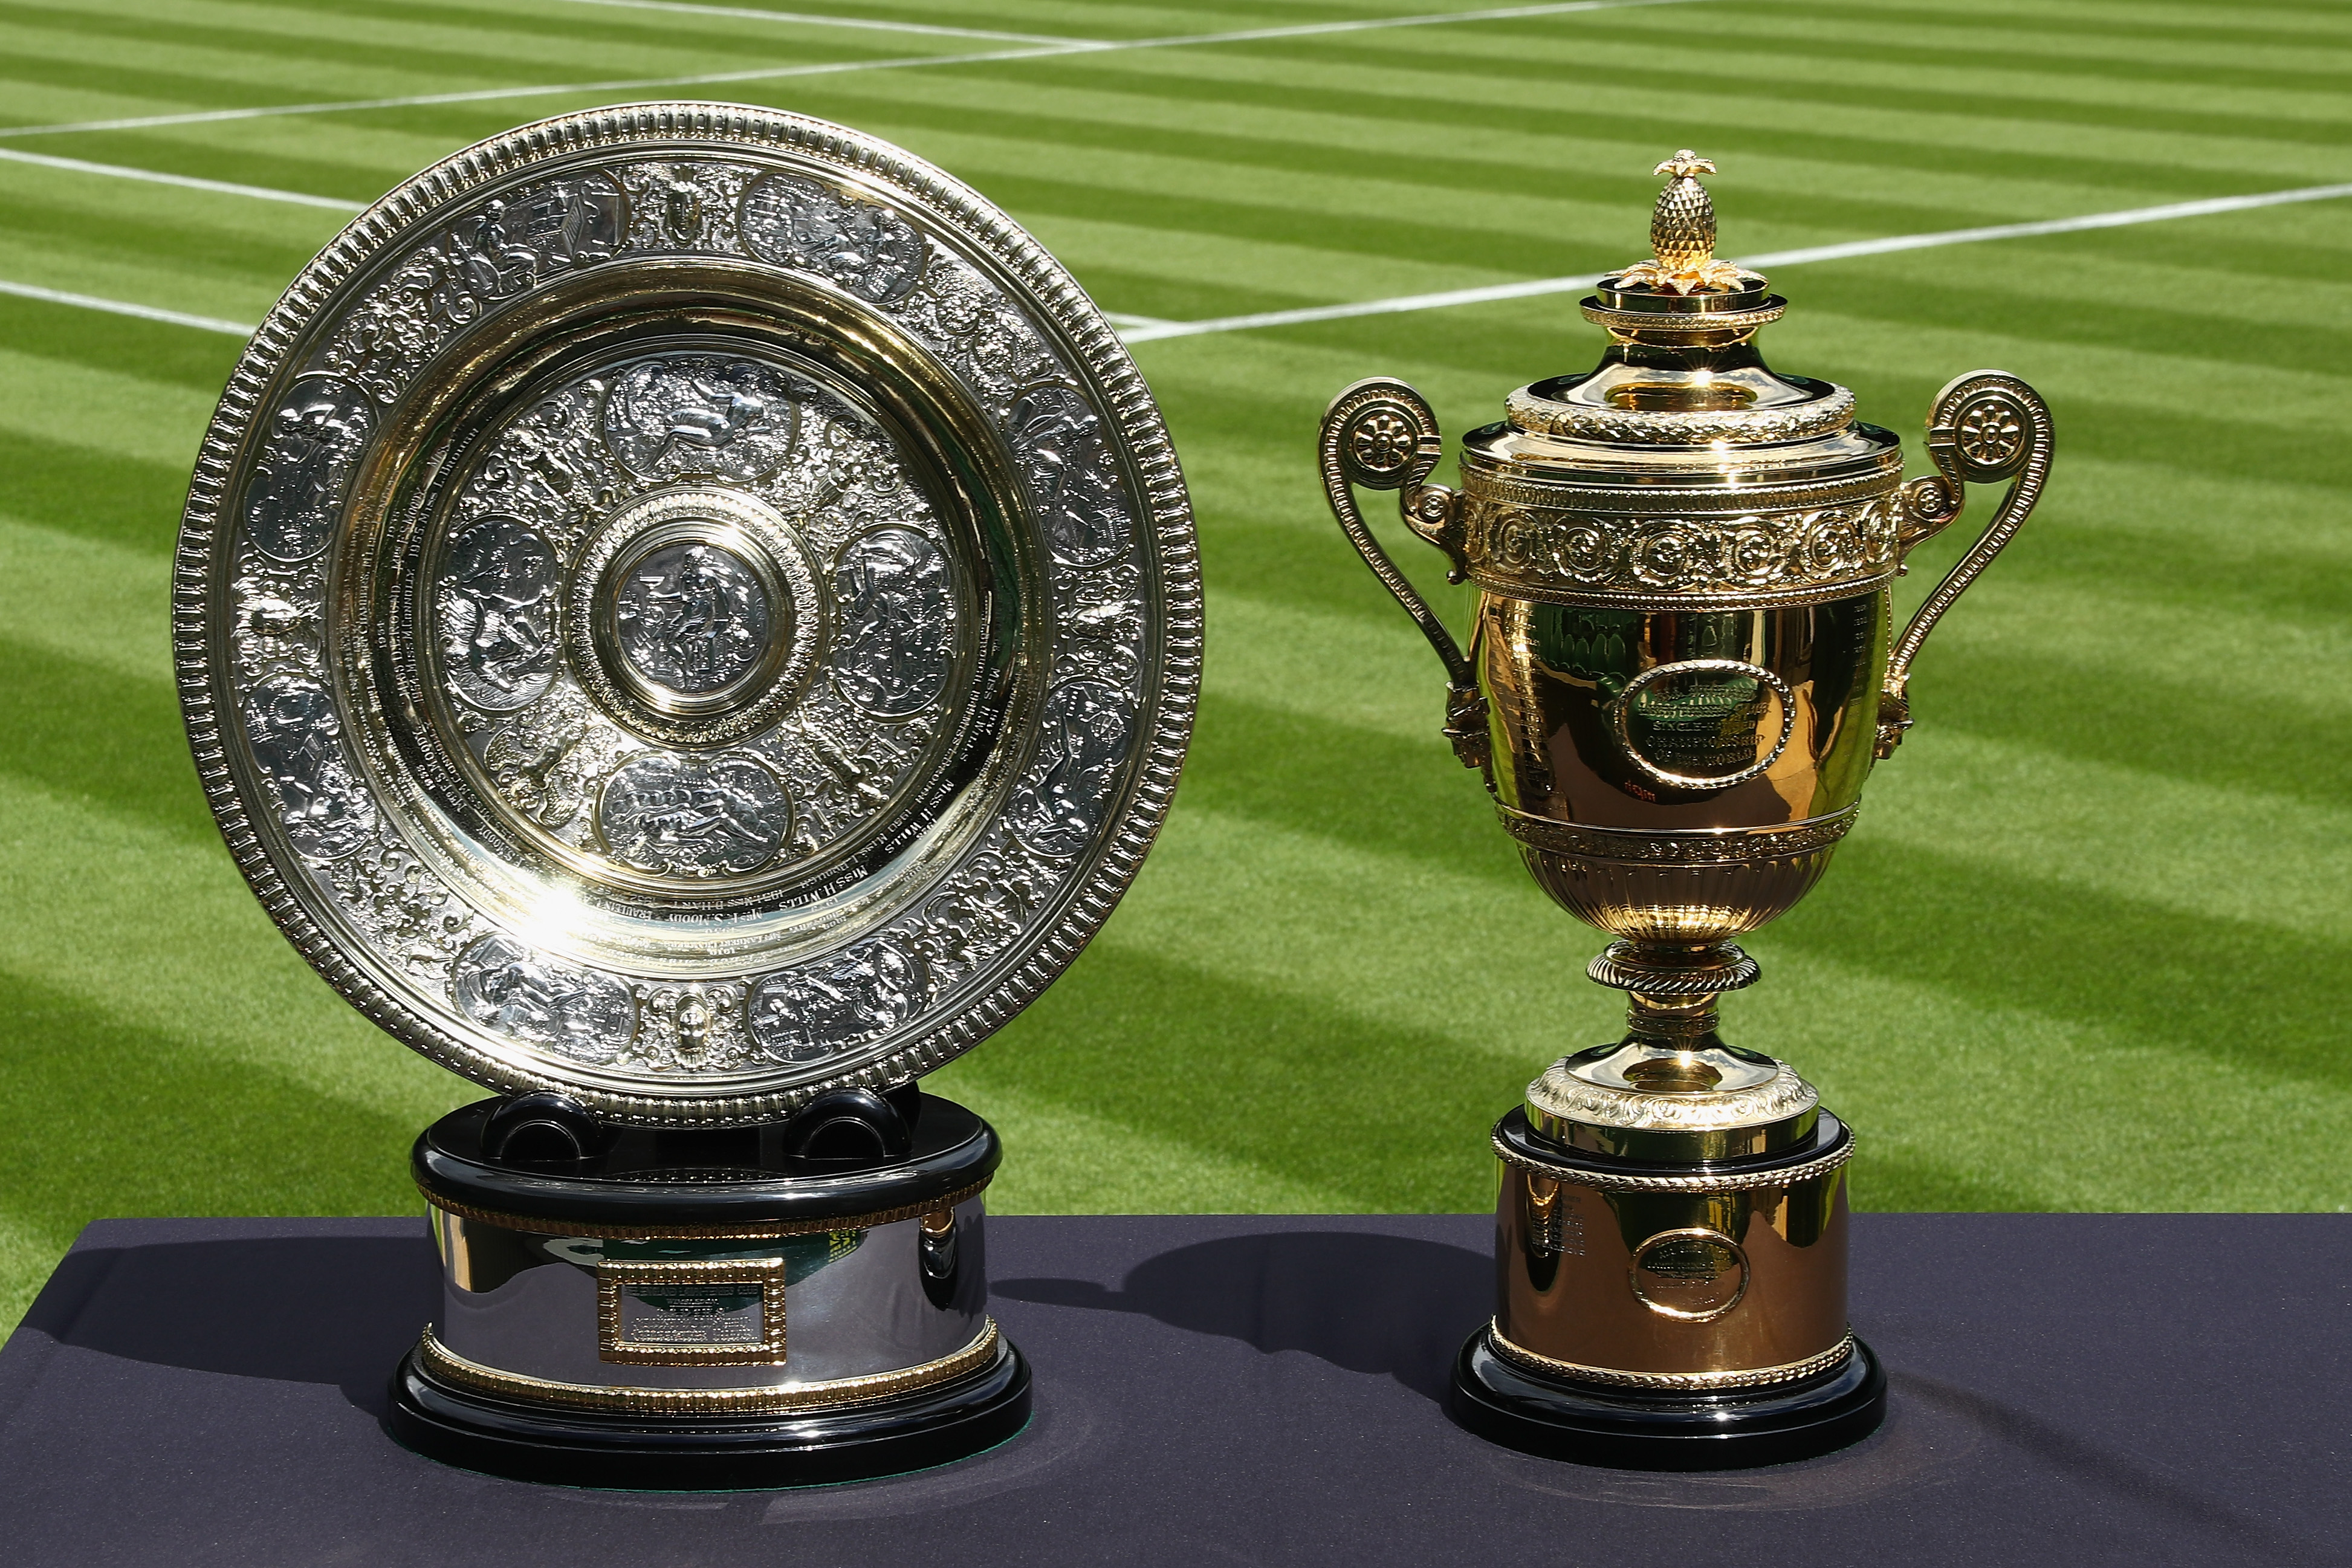 Wimbledon 2022 Alle Infos zum Turnier, TV-Übertragung and Preisgeld